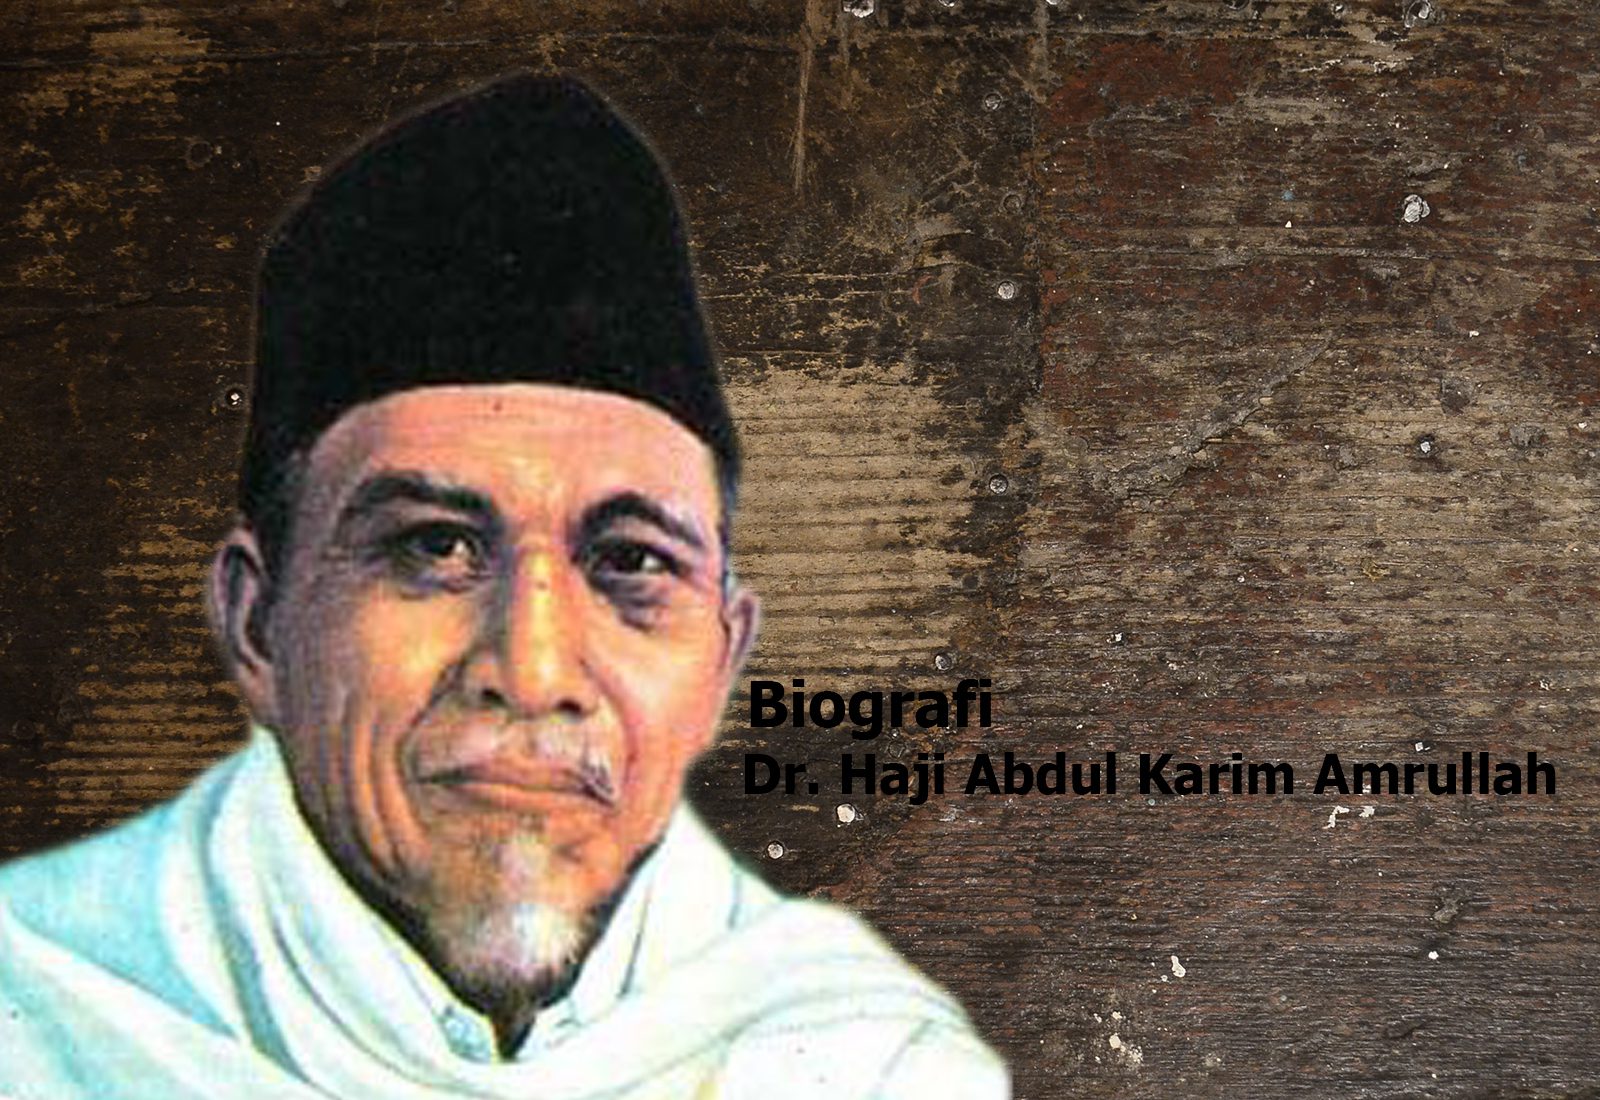 biografi-abdul-karim-amrullah-haji-rasul-sang-ulama-reformis-dari-minangkabau-1879